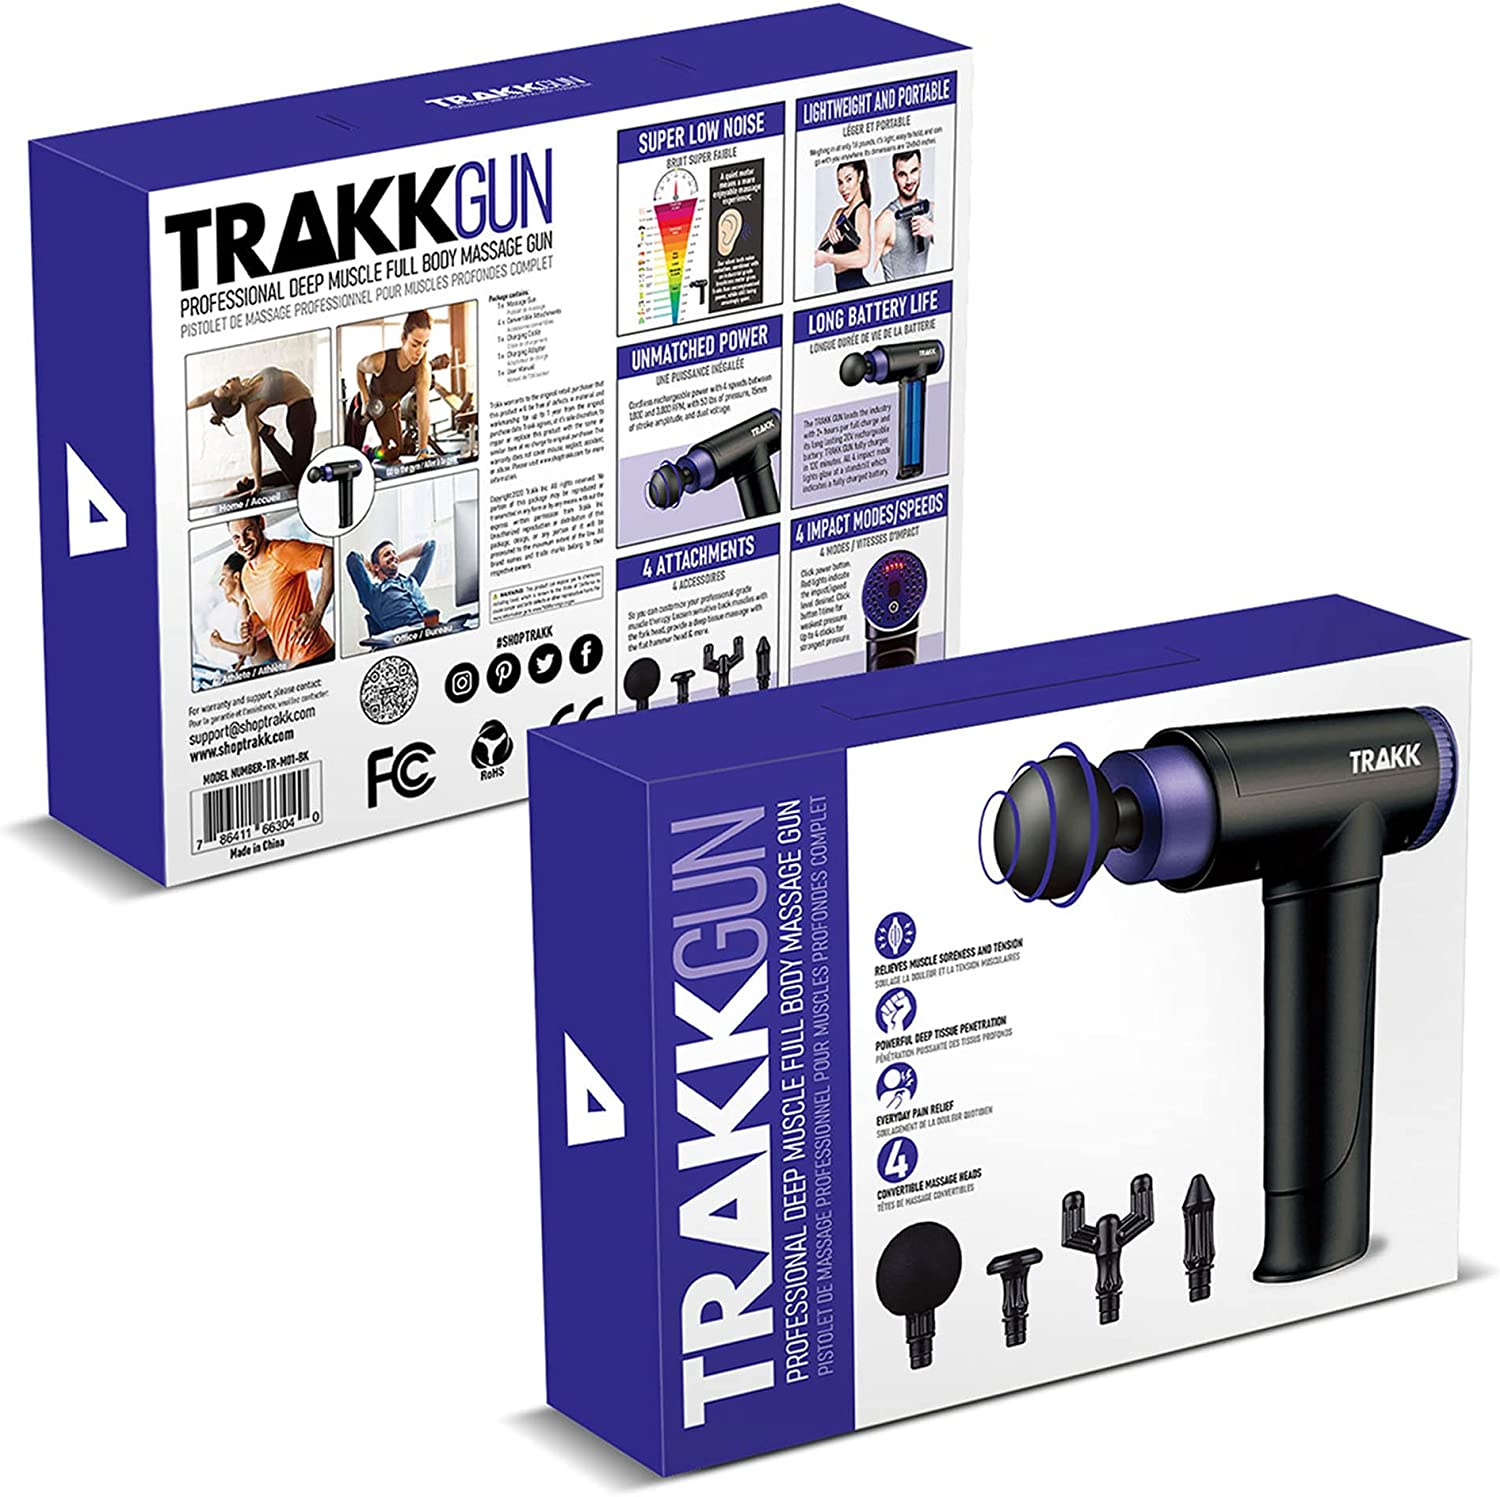 TRAKK SPORT Deep Tissue Handheld Athlete Massage Gun with 4 Speeds11